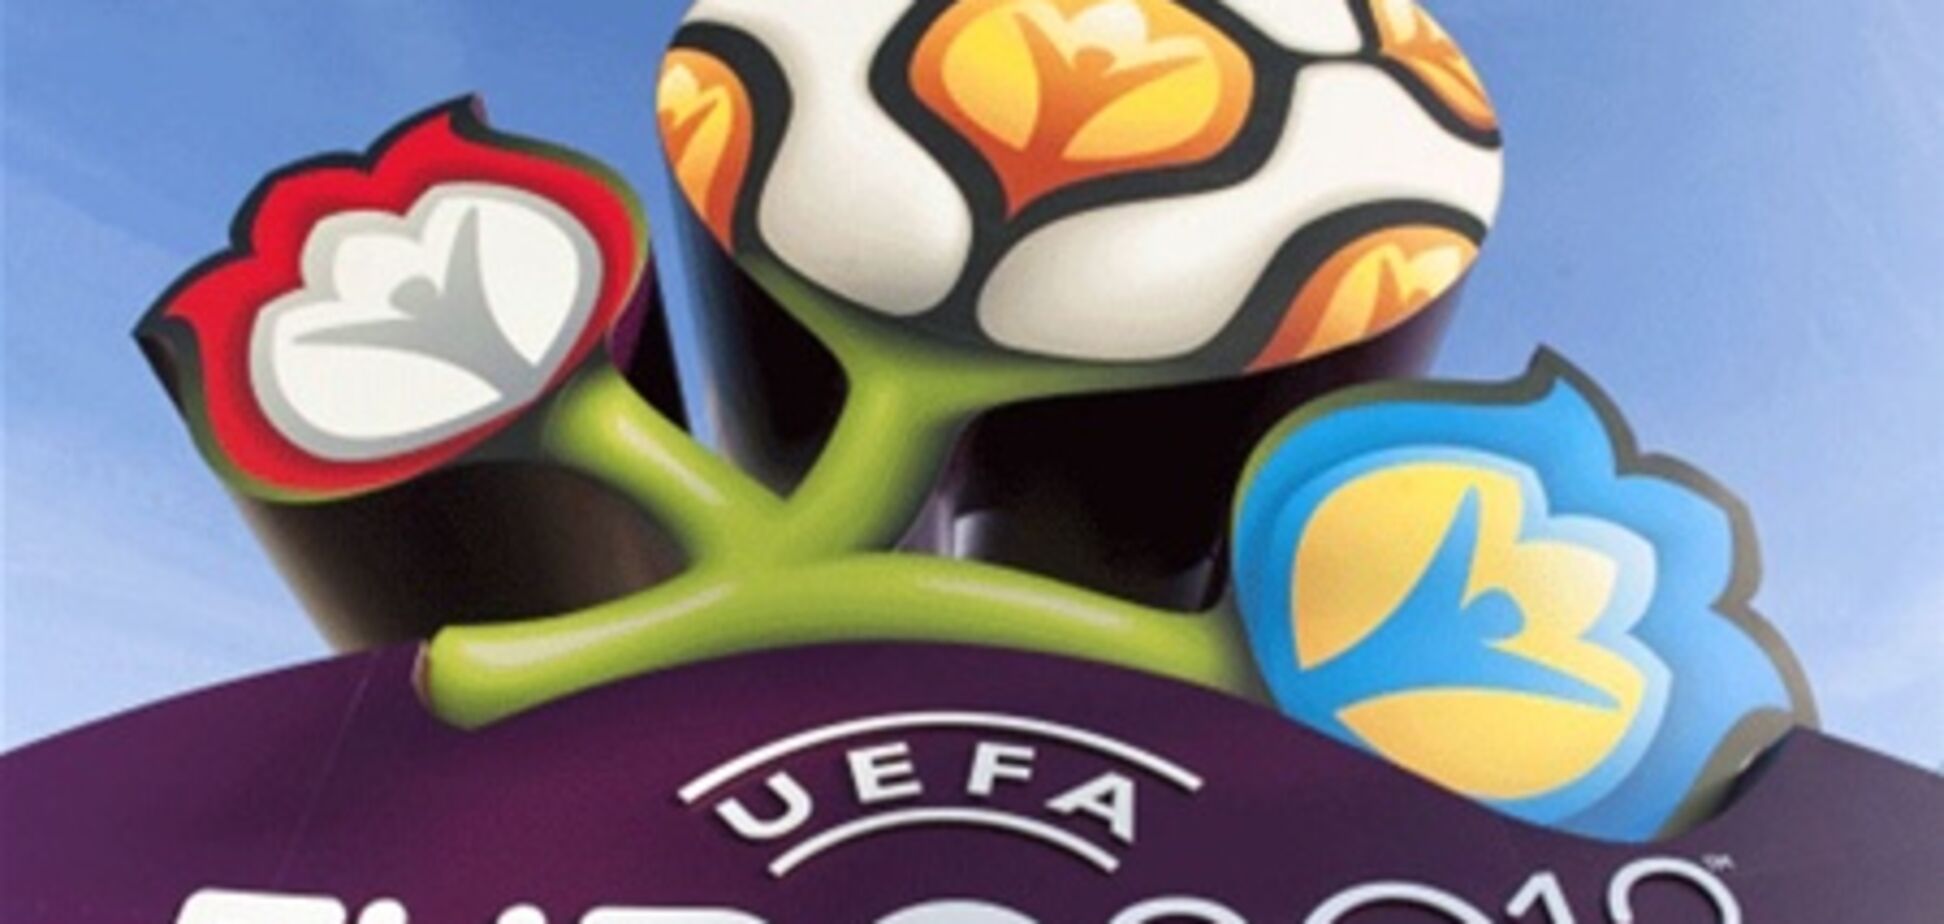 Жизнь после Евро-2012: итоги в цифрах